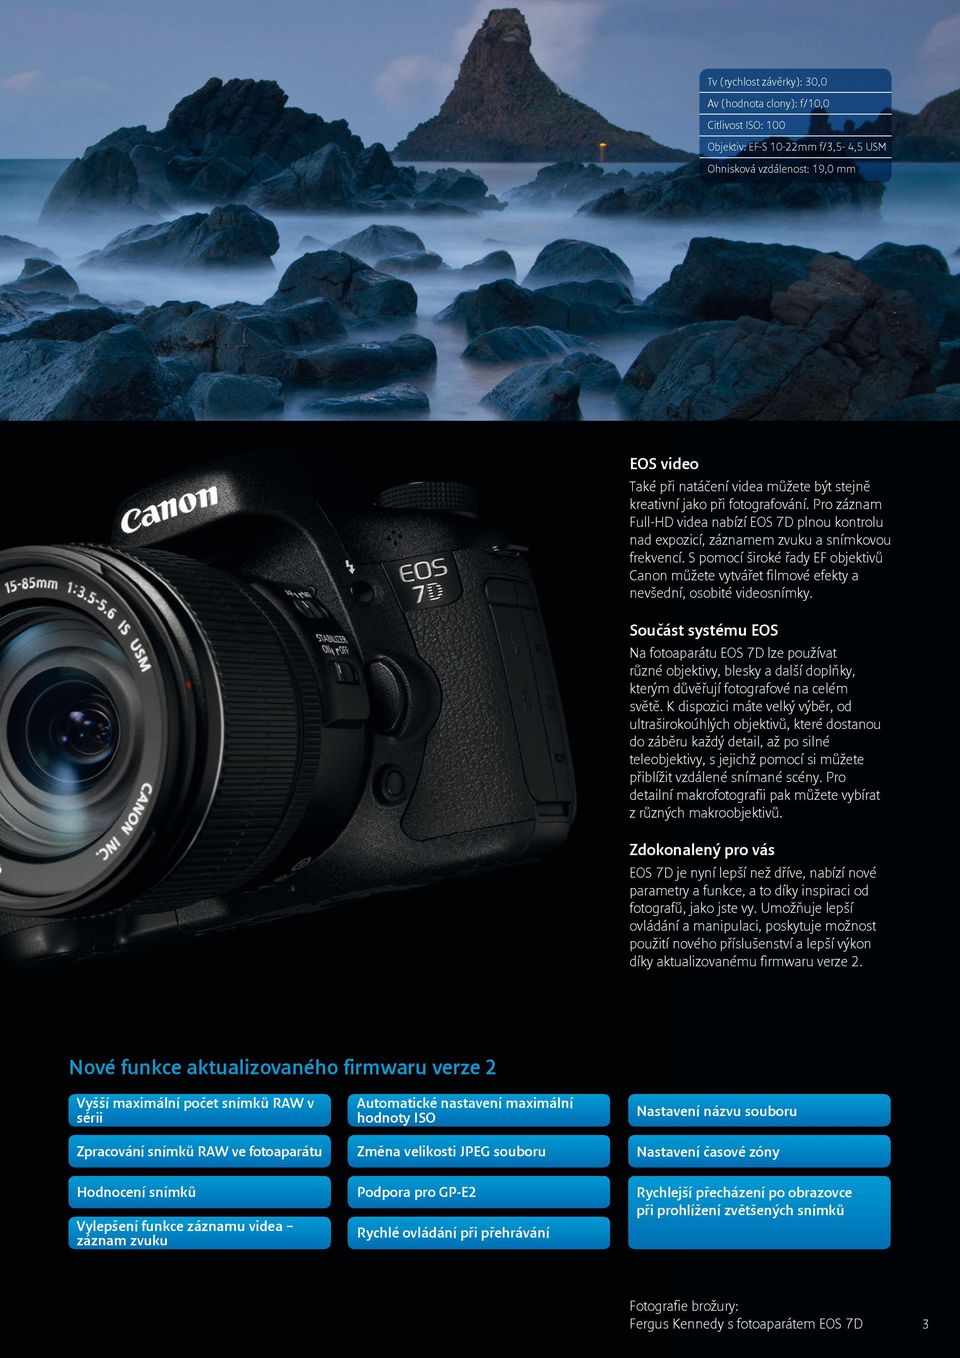 S pomocí široké řady EF objektivů Canon můžete vytvářet filmové efekty a nevšední, osobité videosnímky.